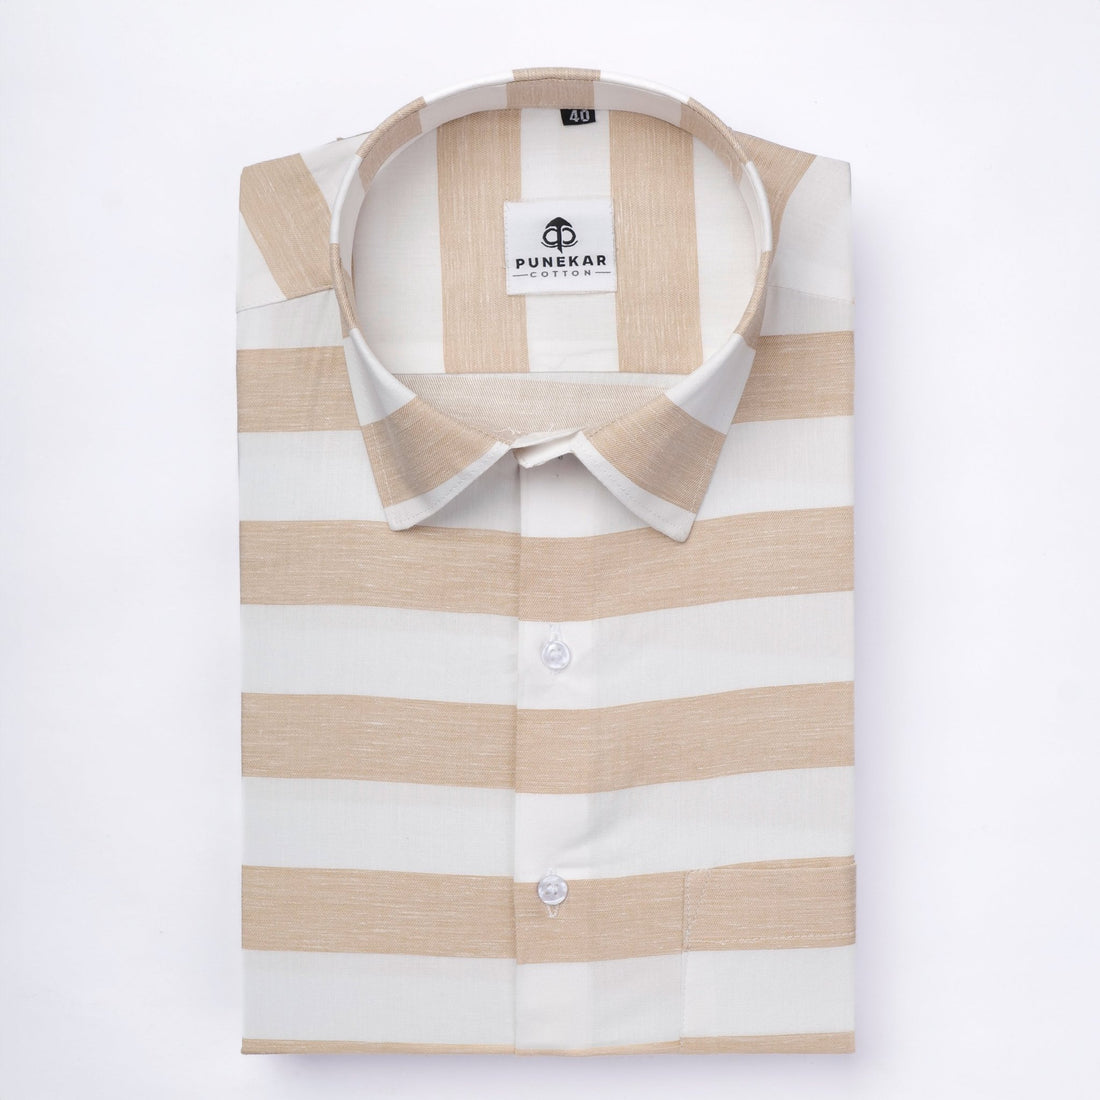 Light Tan Color Cotton Stripe Shirt For Men - Punekar Cotton